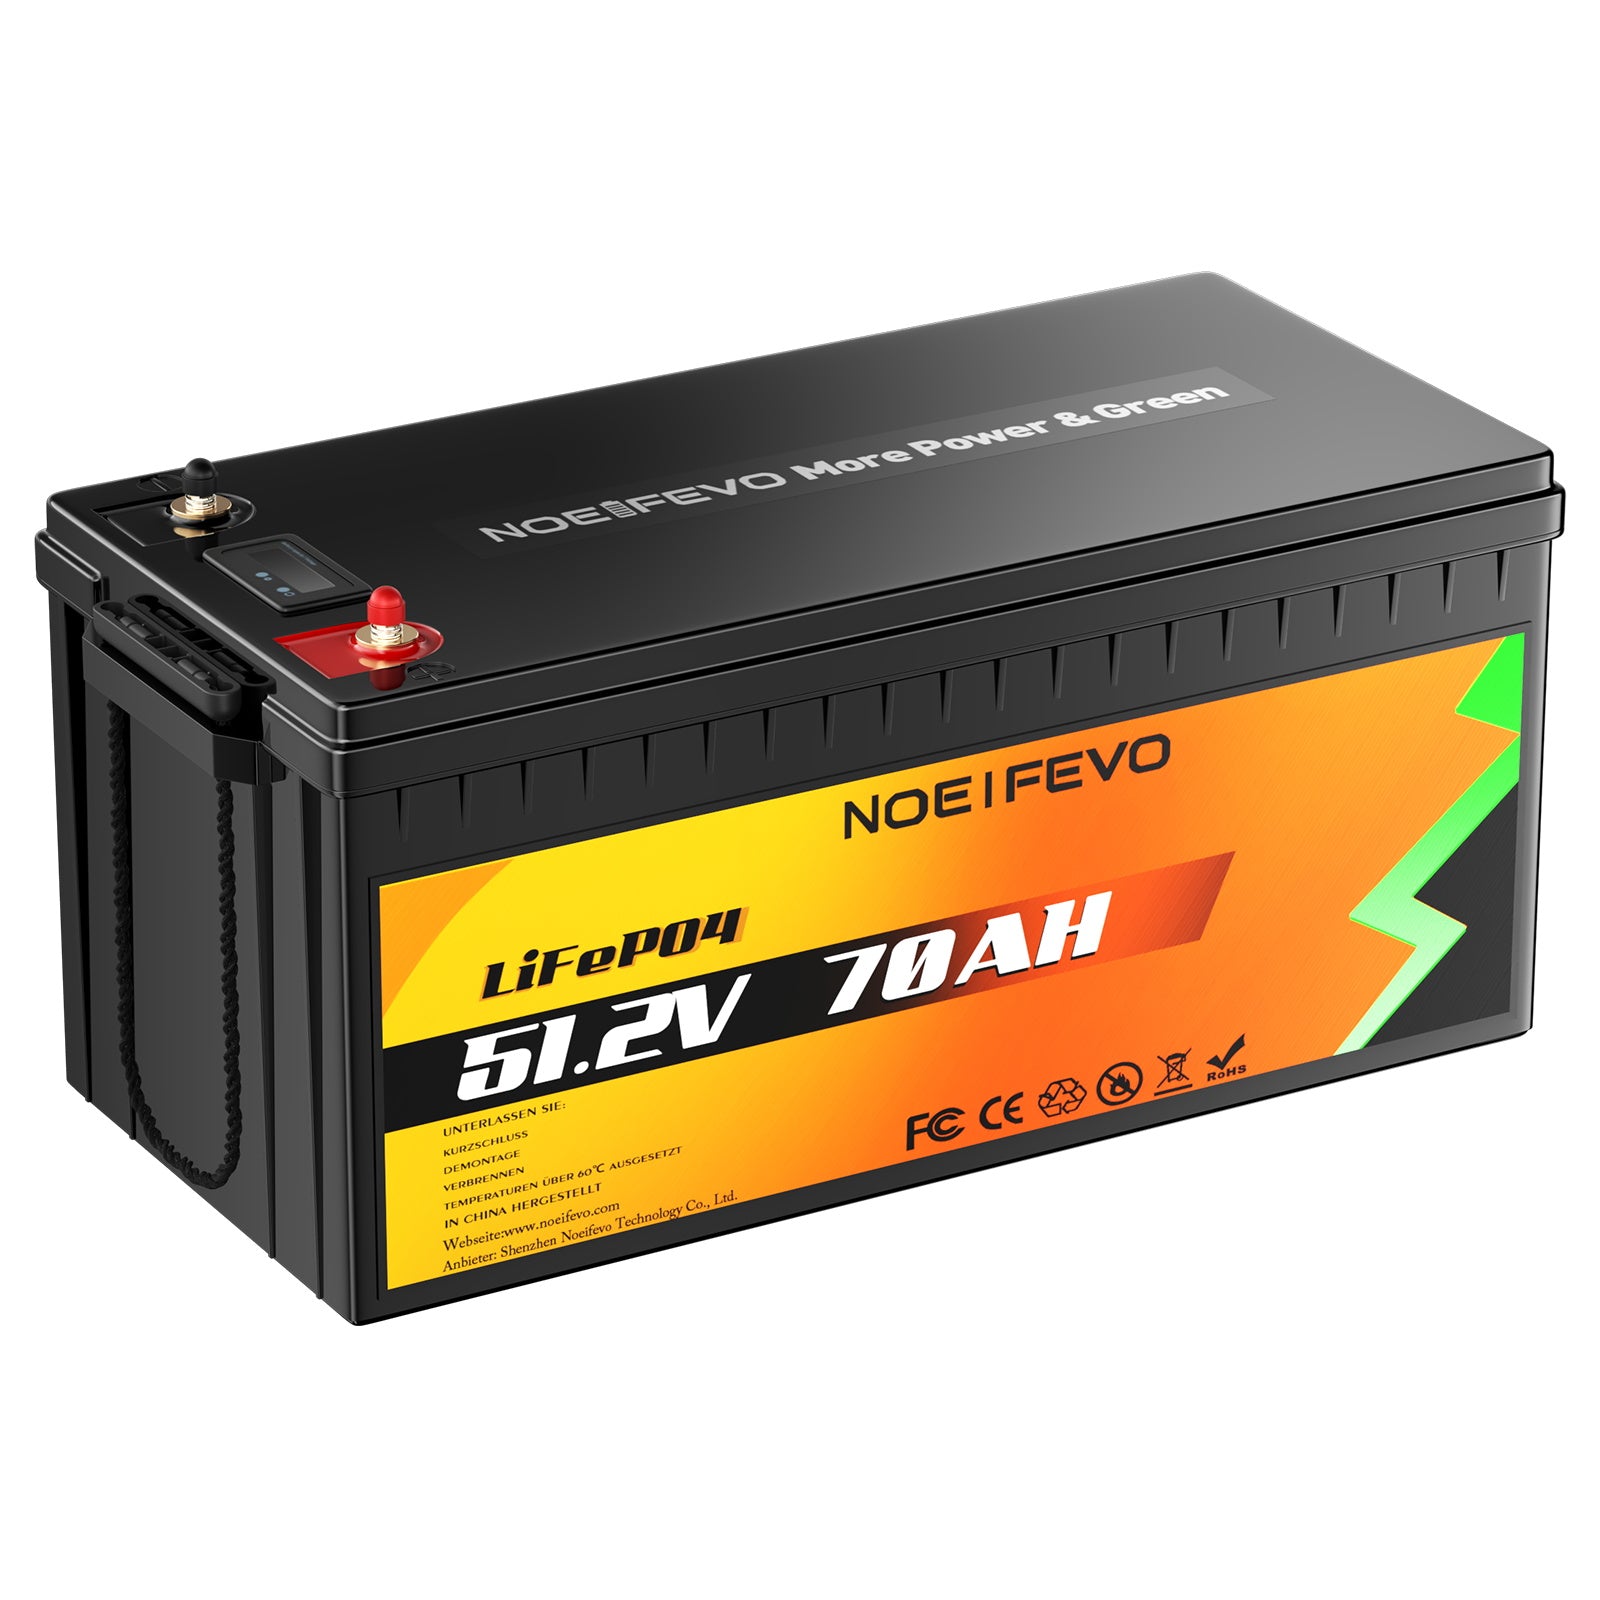 NOEIFEVO D4870 51.2V 70AH Batería de Litio Hierro Fosfato LiFePO4 Batería Con 80A BMS